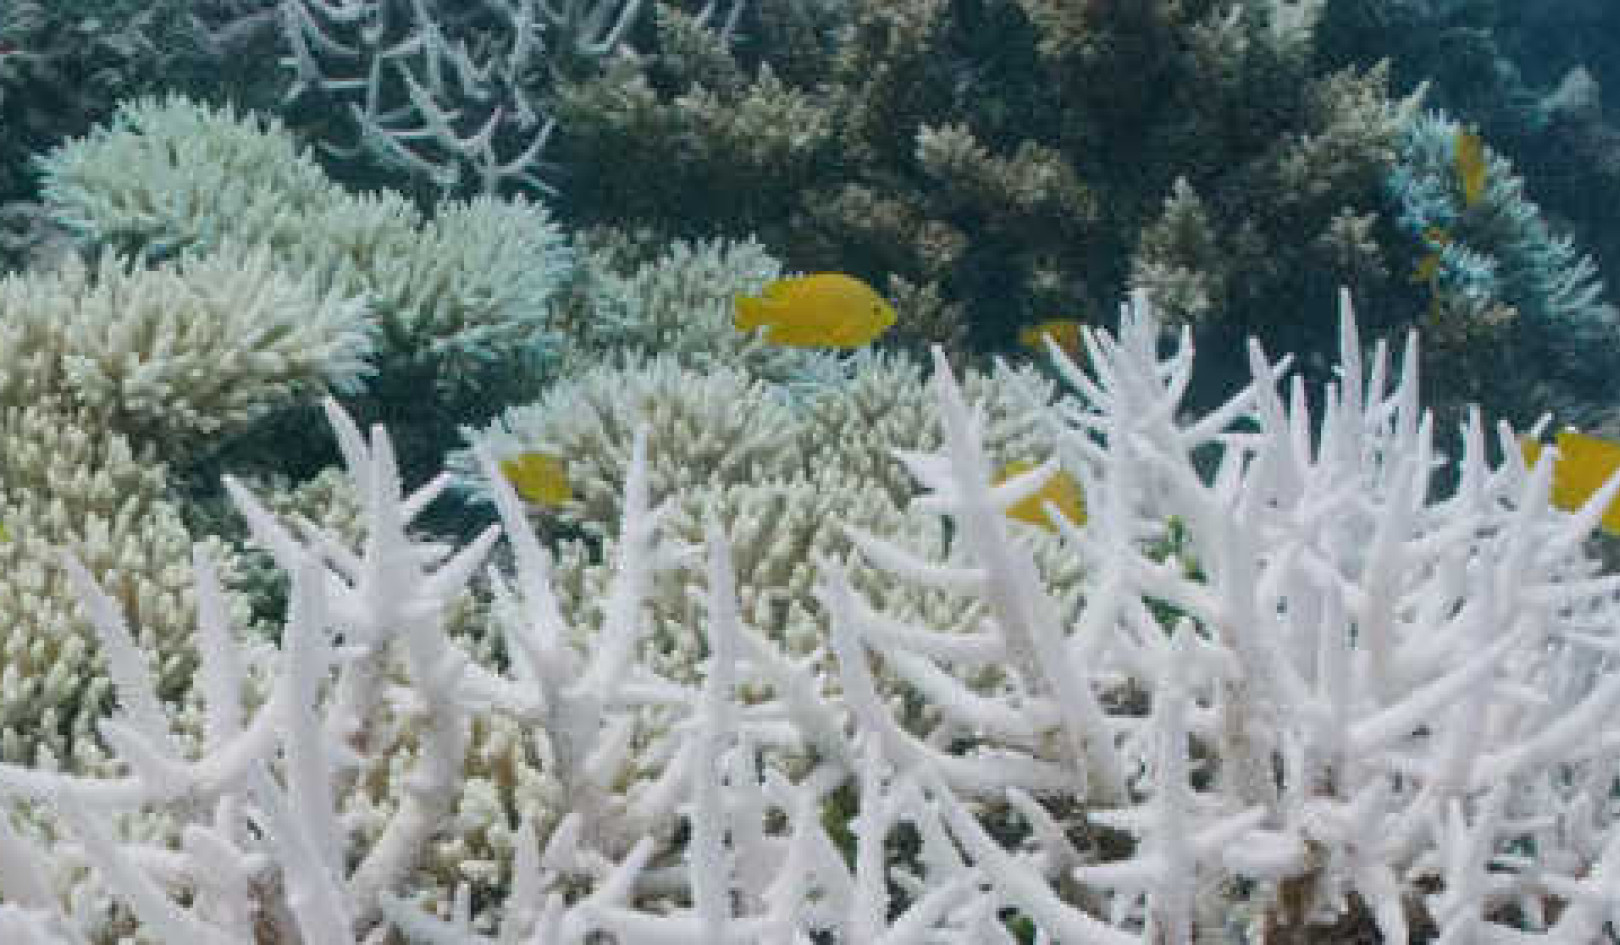 Herhaald bleken van koraal laat dieren in het wild met weinig opties achter